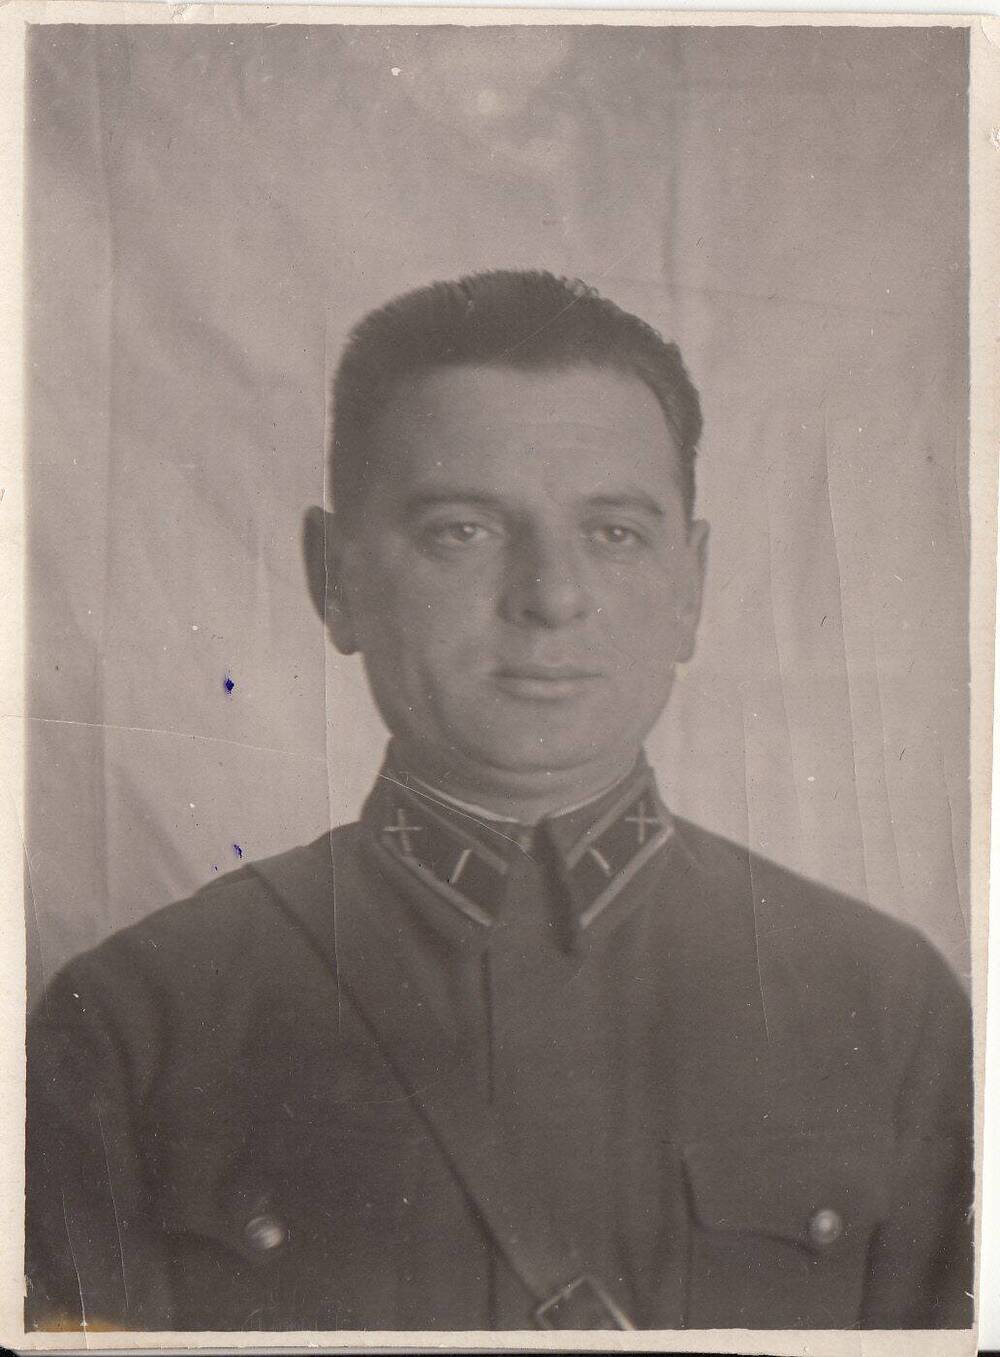 Фотография: Россиков Яков Серафимович, бывший командир артиллерийского дивизиона Подольского артиллерийского училища